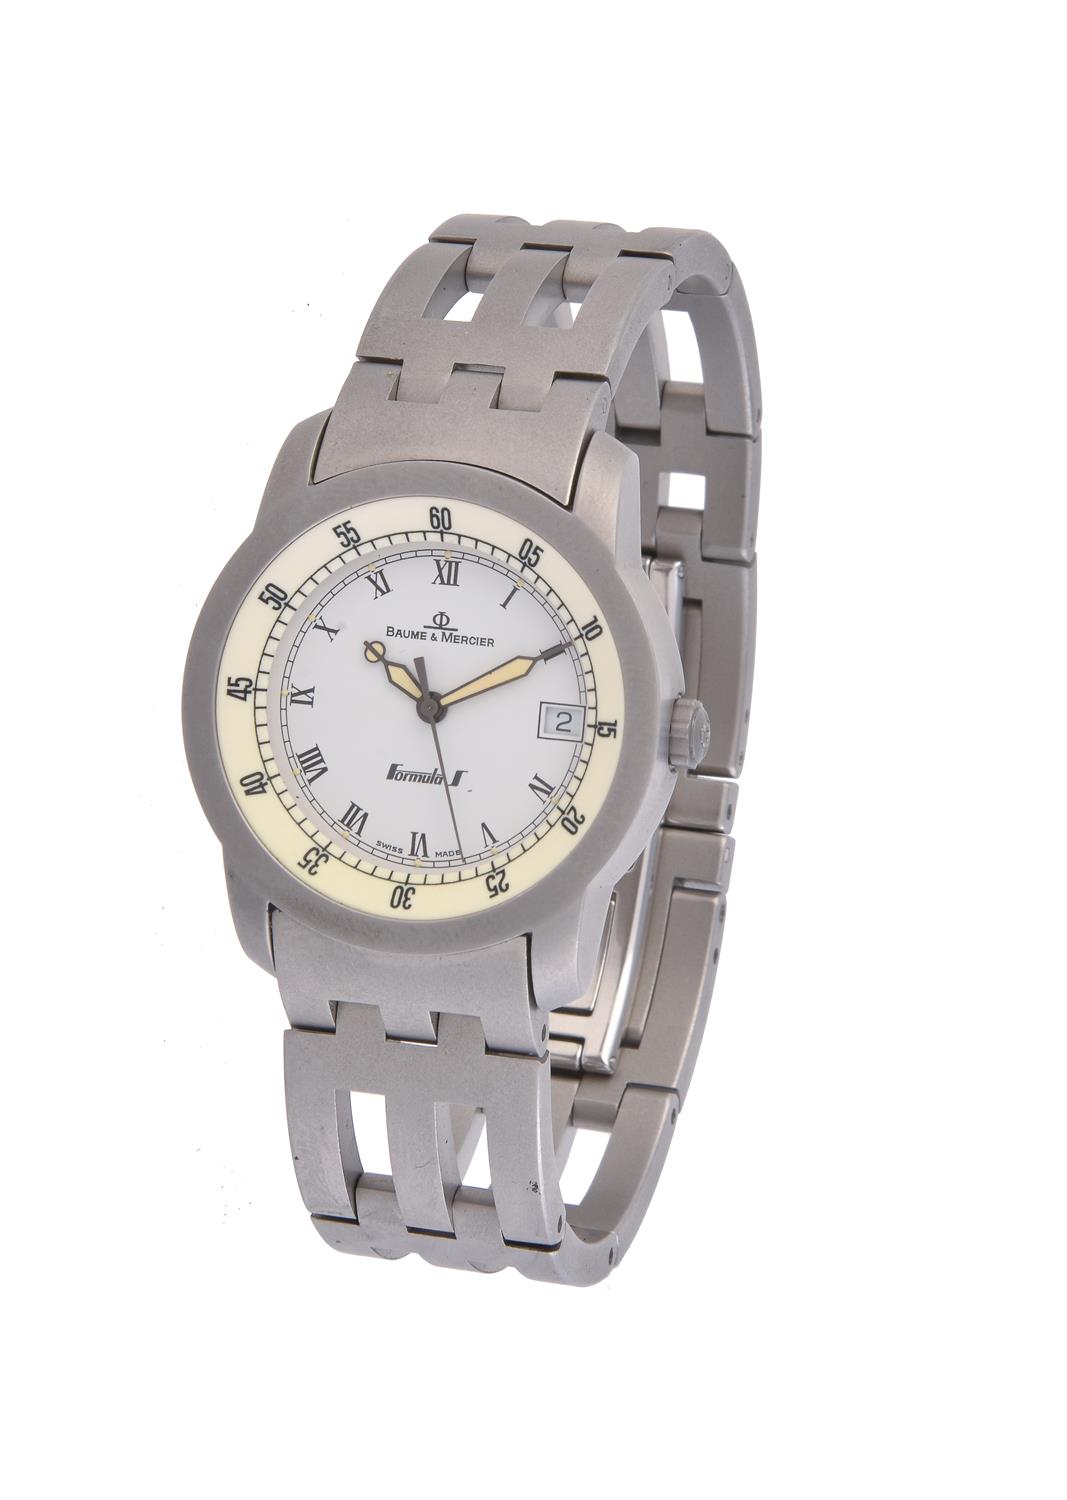 Baume & Mercier, Formula 1 Drive, a stainless steel bracelet watch